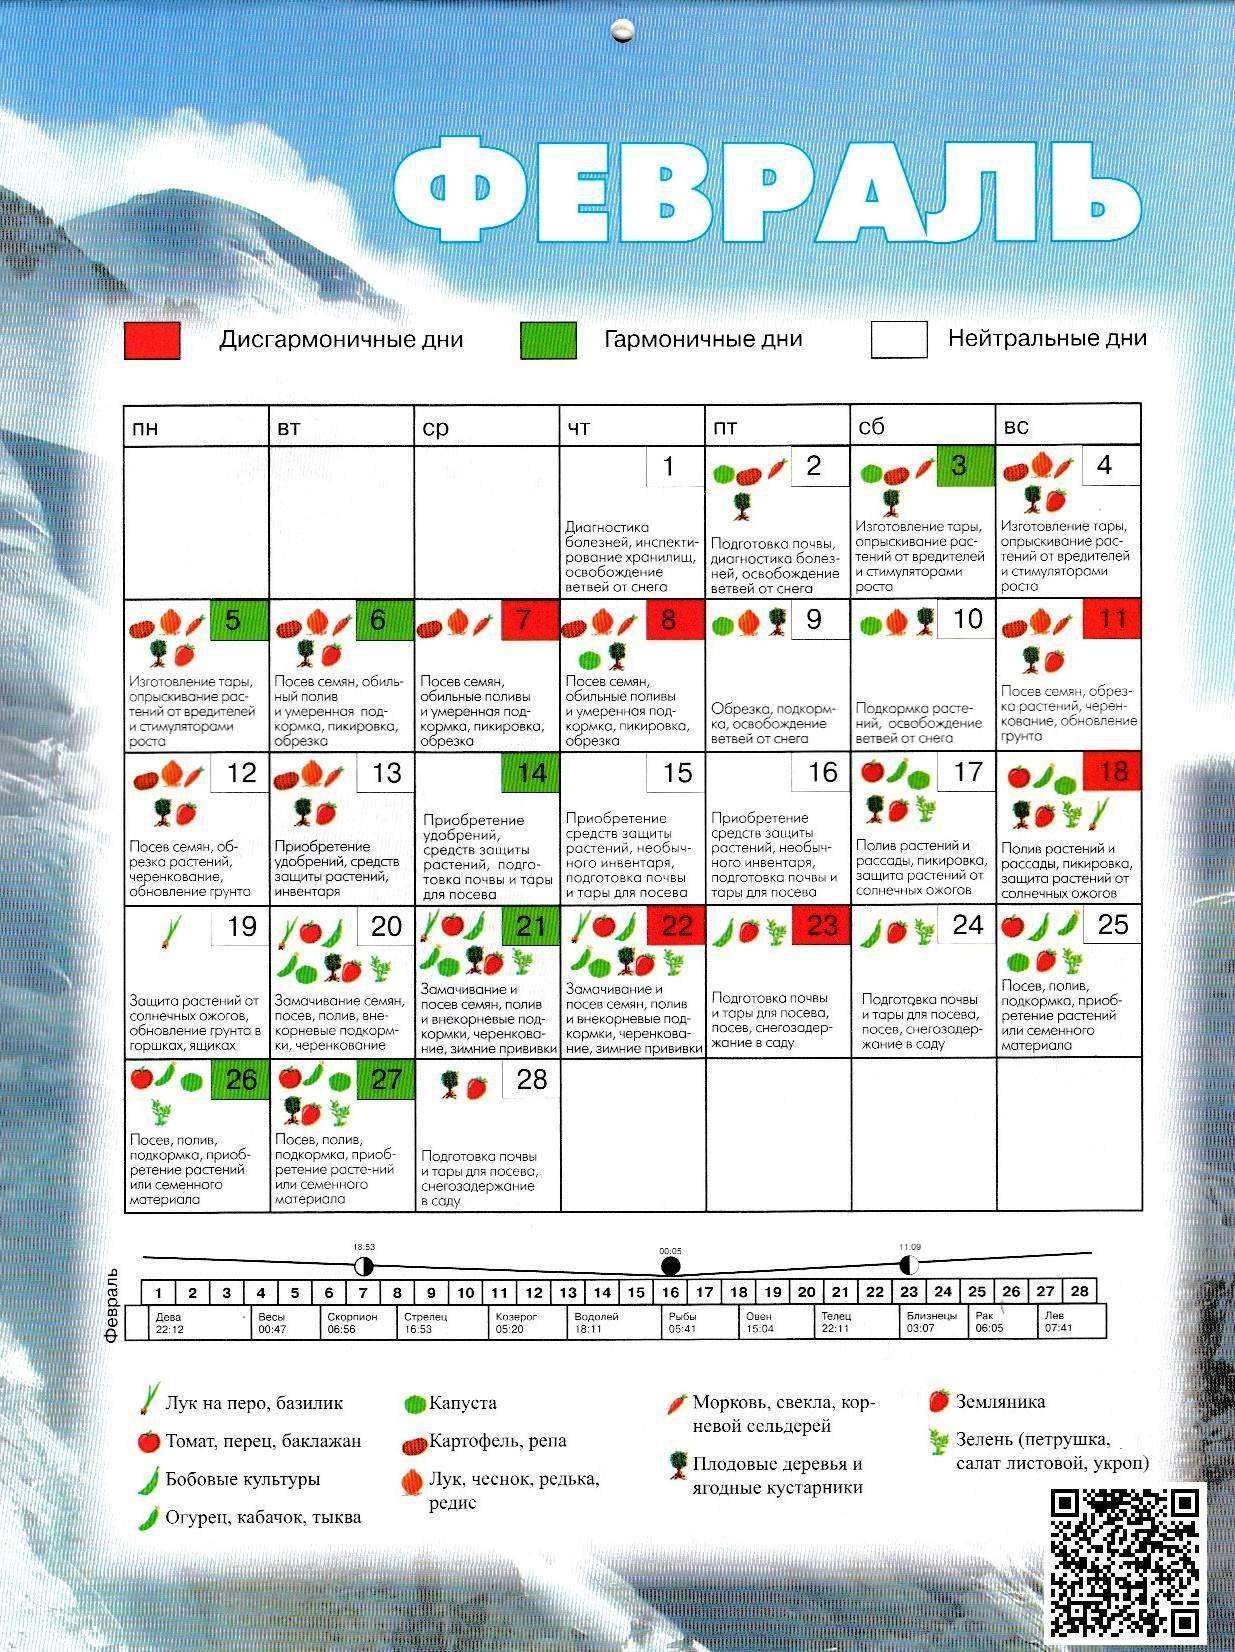 Когда садить чеснок под зиму на урале в 2021 году по лунному календарю: таблица благоприятных дней